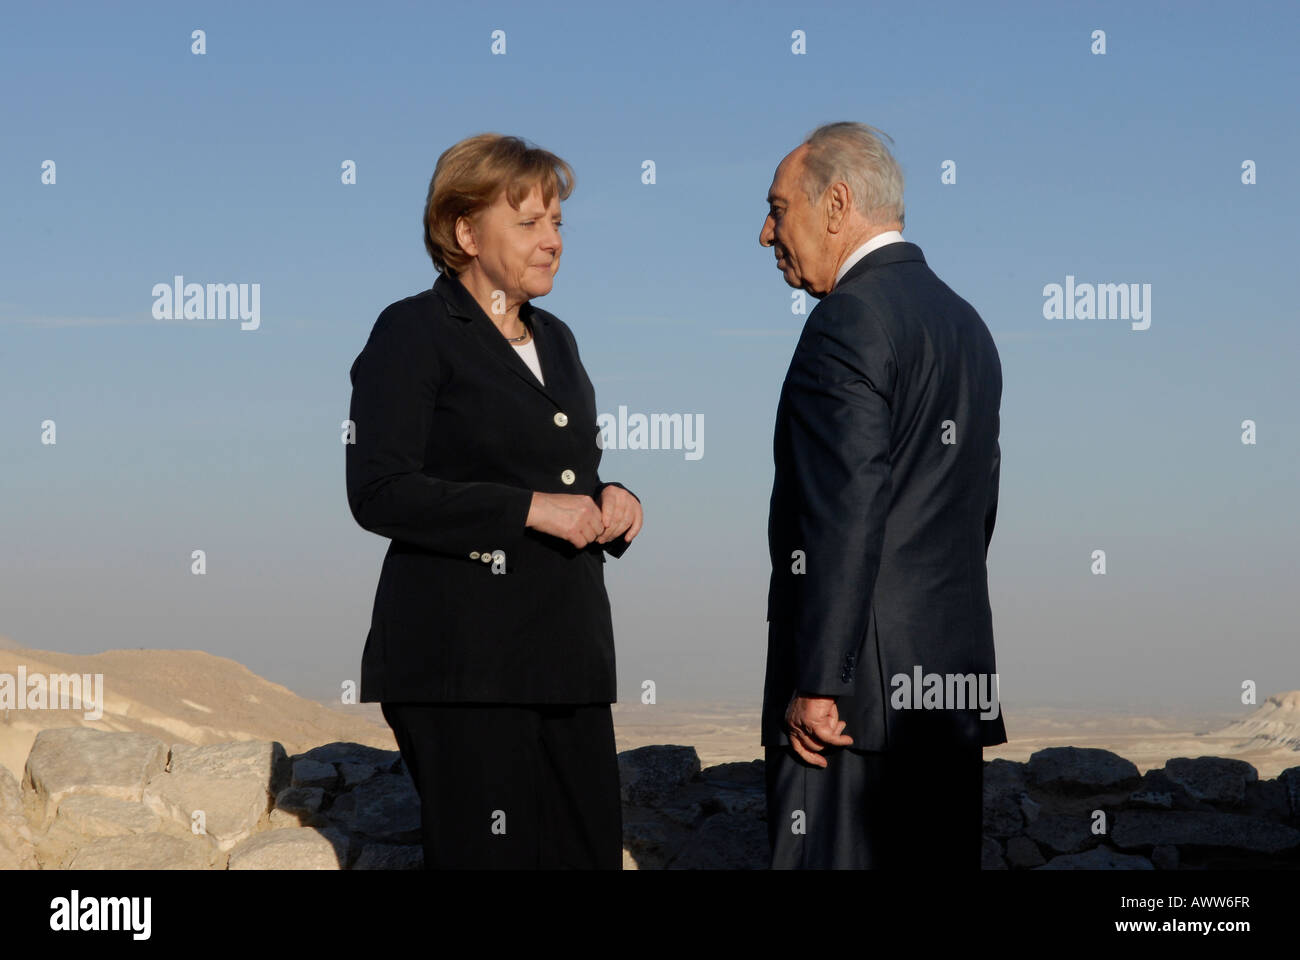 La canciller alemana, Angela Merkel, con el presidente de Israel, Shimon Peres, en el desierto de Negev, Israel Foto de stock